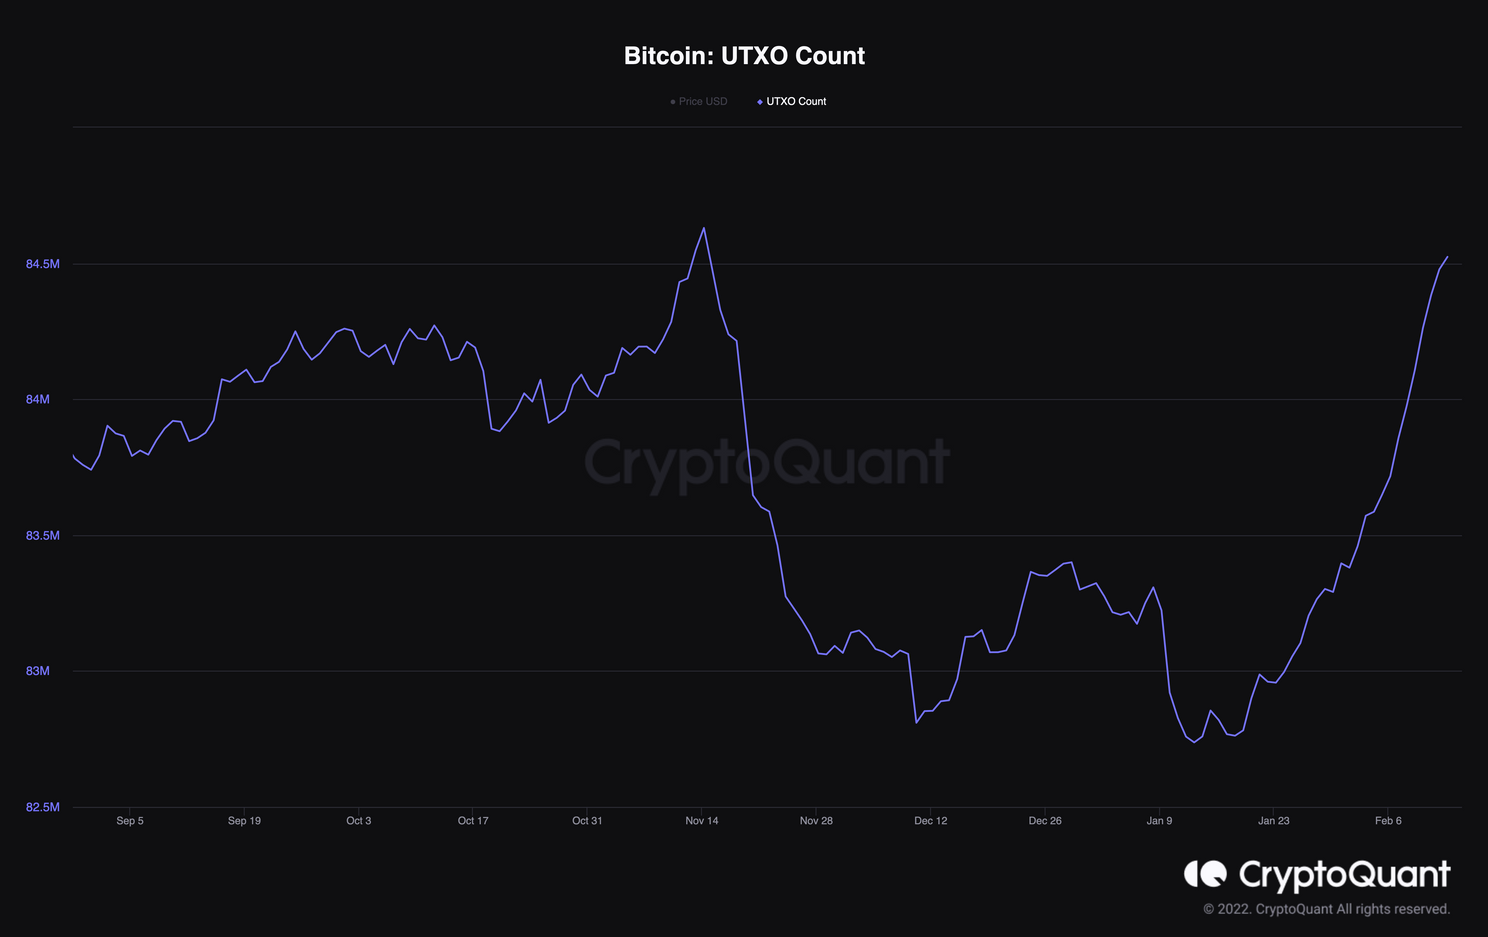 Bitcoin UTXO's richting nieuw record van 84,6 miljoen